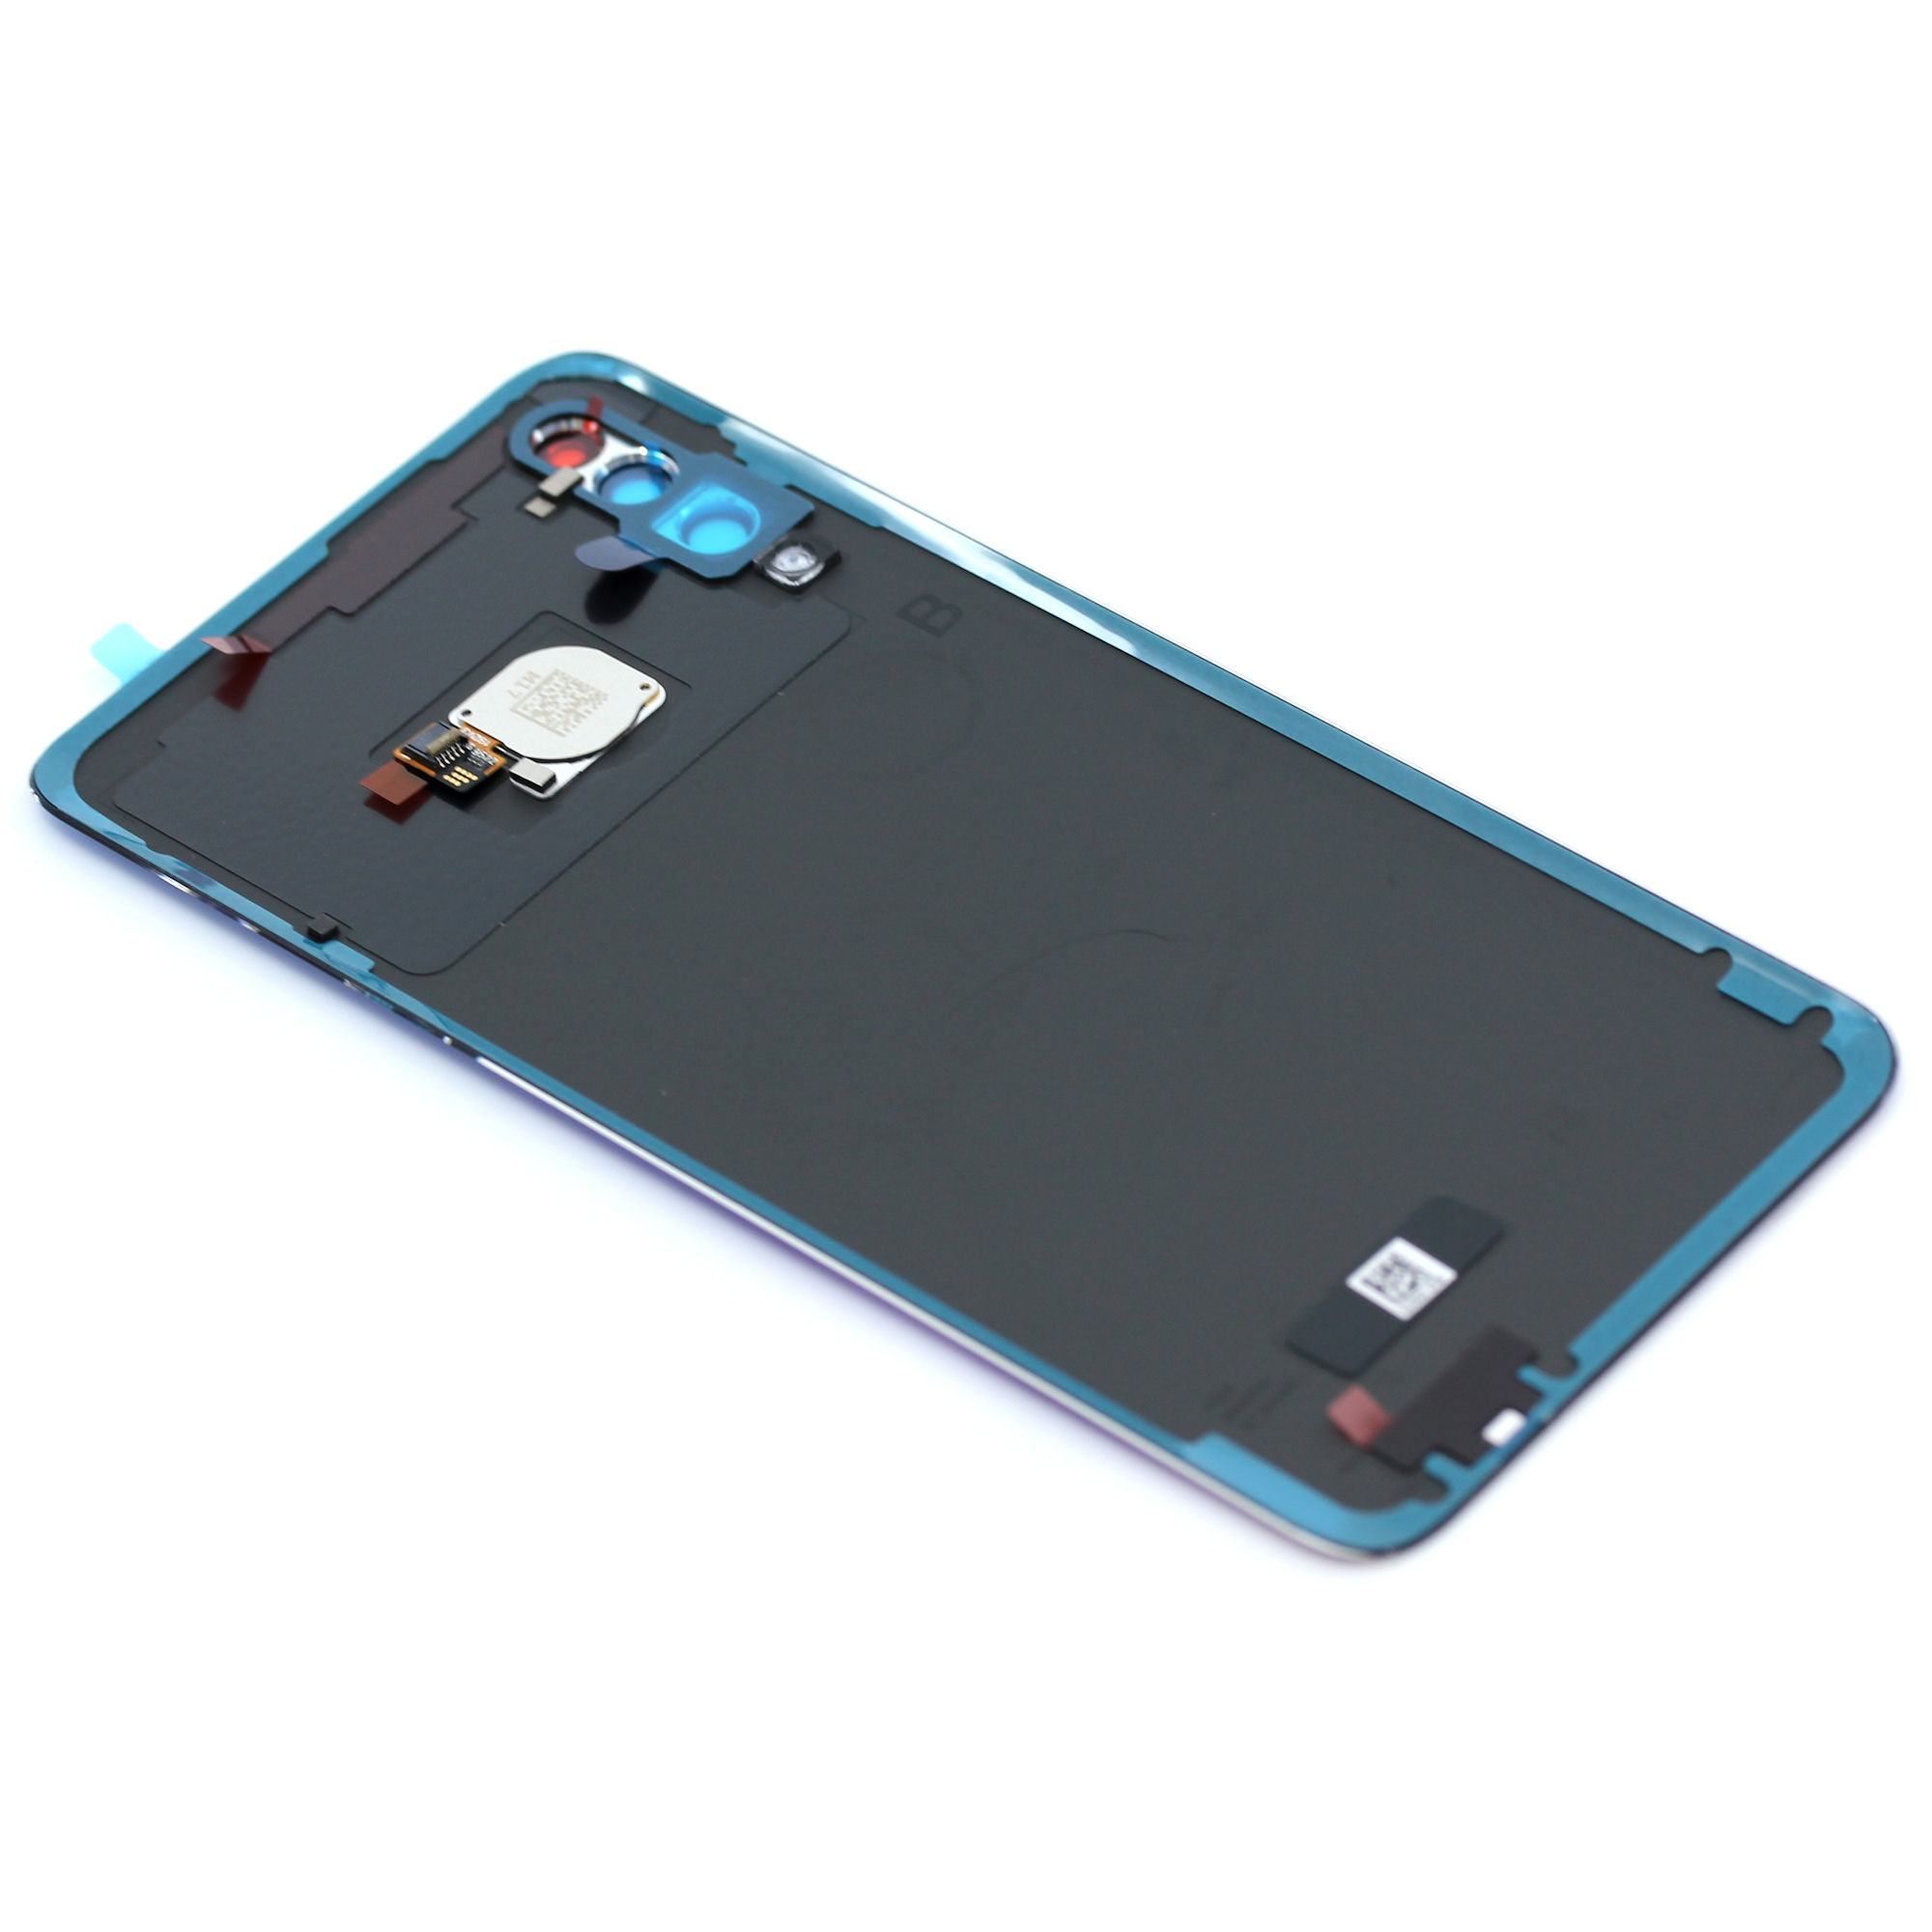 Huawei P30 Lite (MAR-LX1A) / NewEdition (MAR-LX1B) Akkudeckel peacock blau Backcover